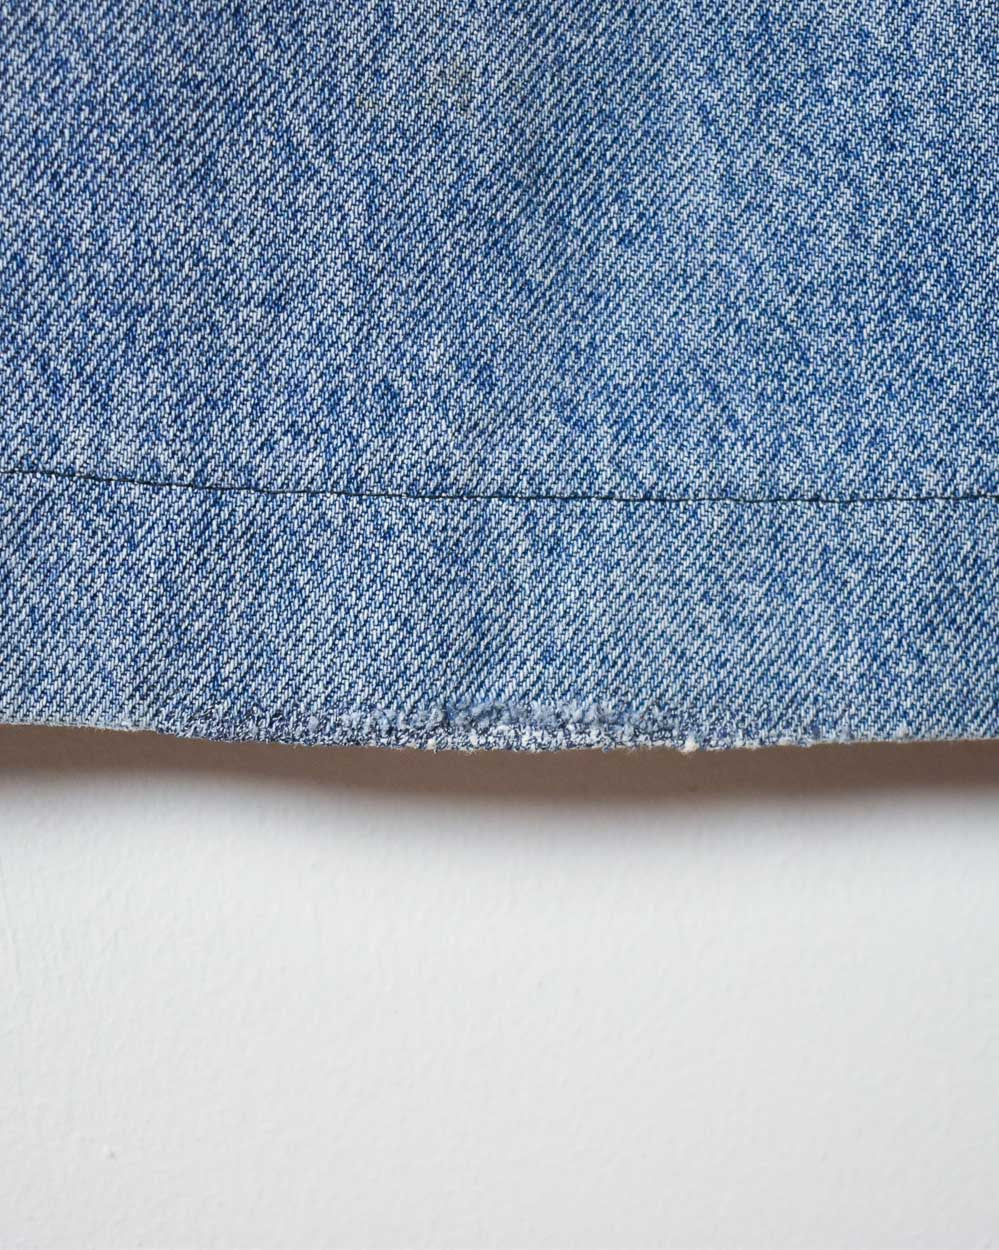 Blue Lee Jeans - W40 L26